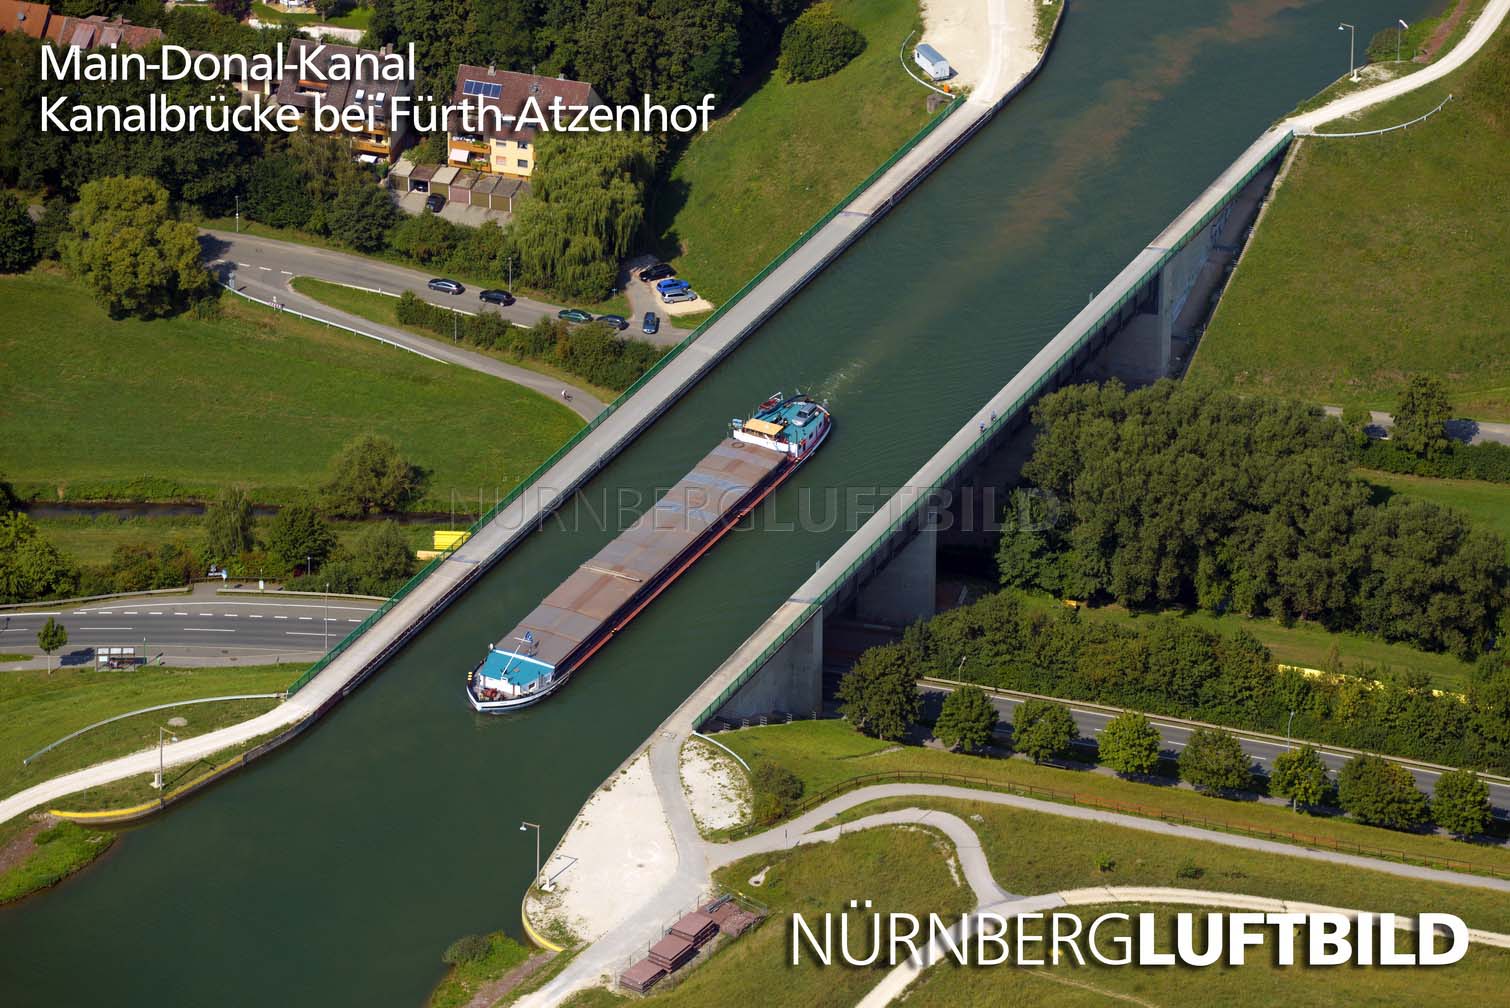 Main-Donau-Kanal, Kanalbrücke bei Fürth-Atzenhof, Luftbild